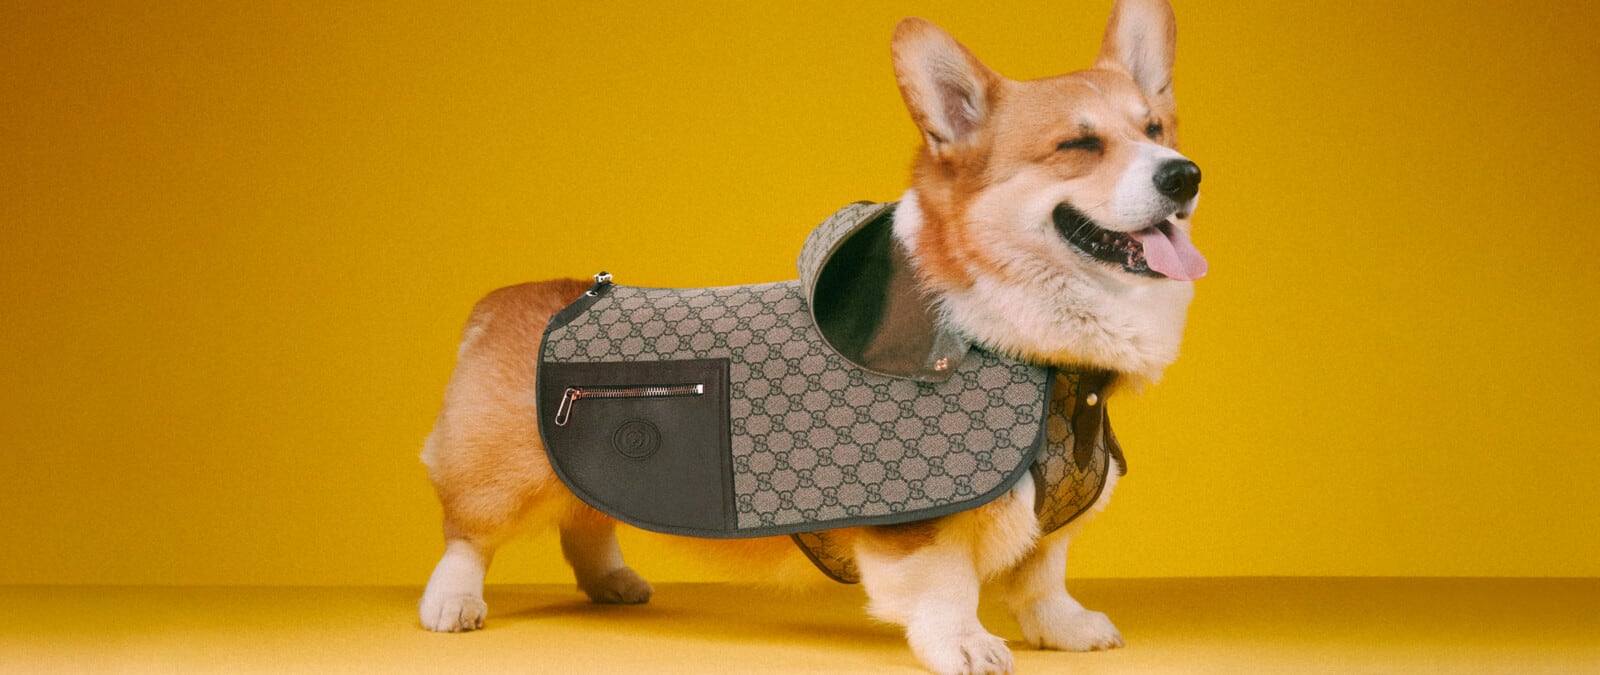 9 Best Designer Dog Clothes & Accessories Brands in 2023